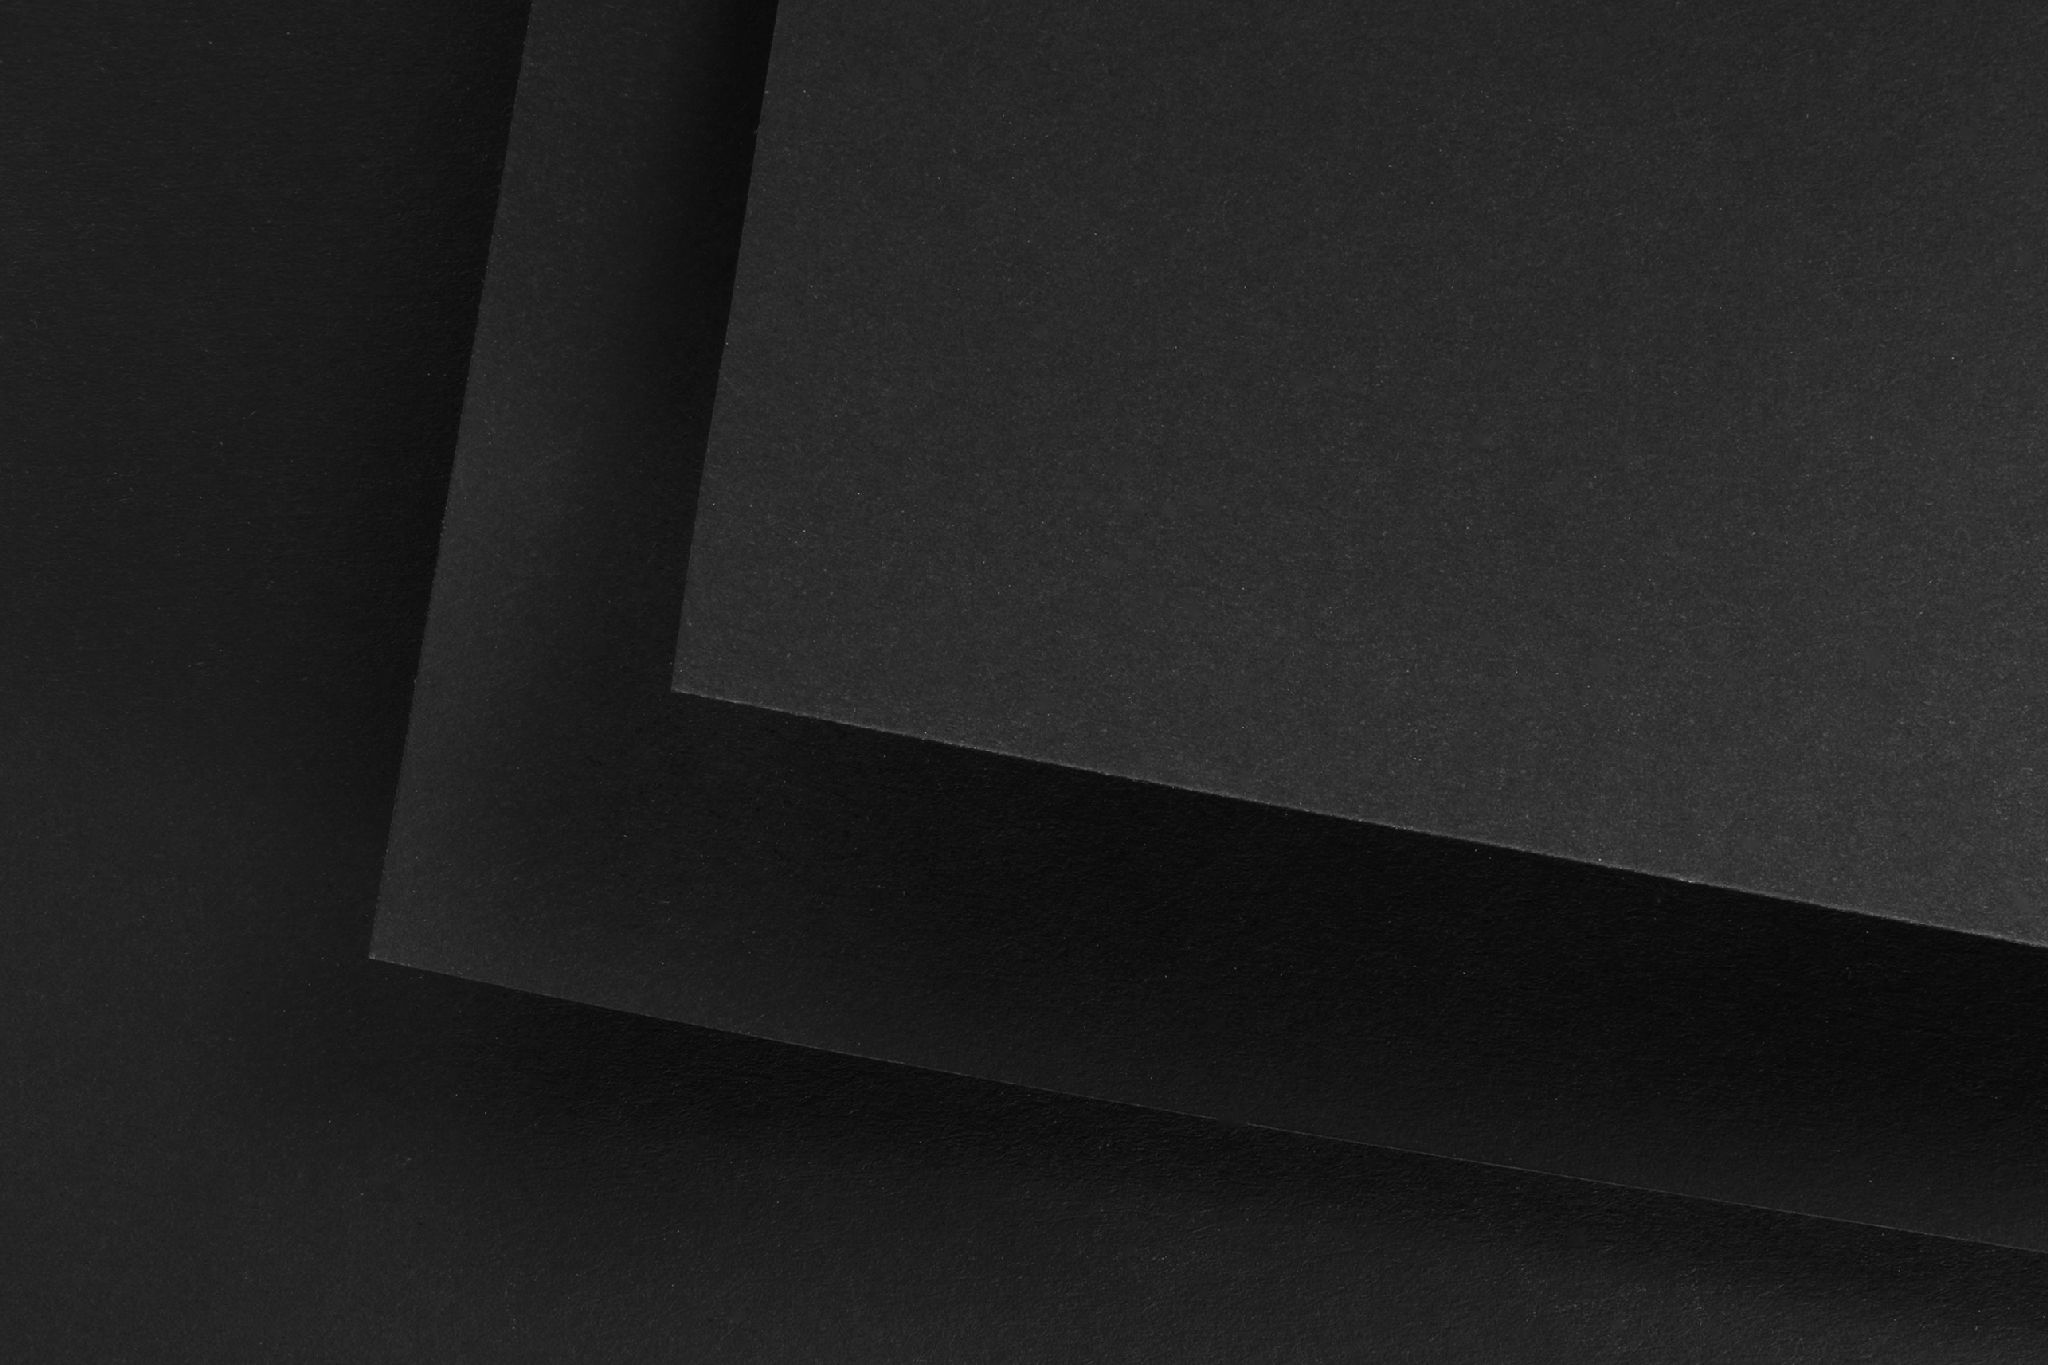 На полоске черного картона с помощью. Бумага а3 Fabriano черная. Черная матовая бумага. Черная дизайнерская бумага. Дизайнерский картон черный.